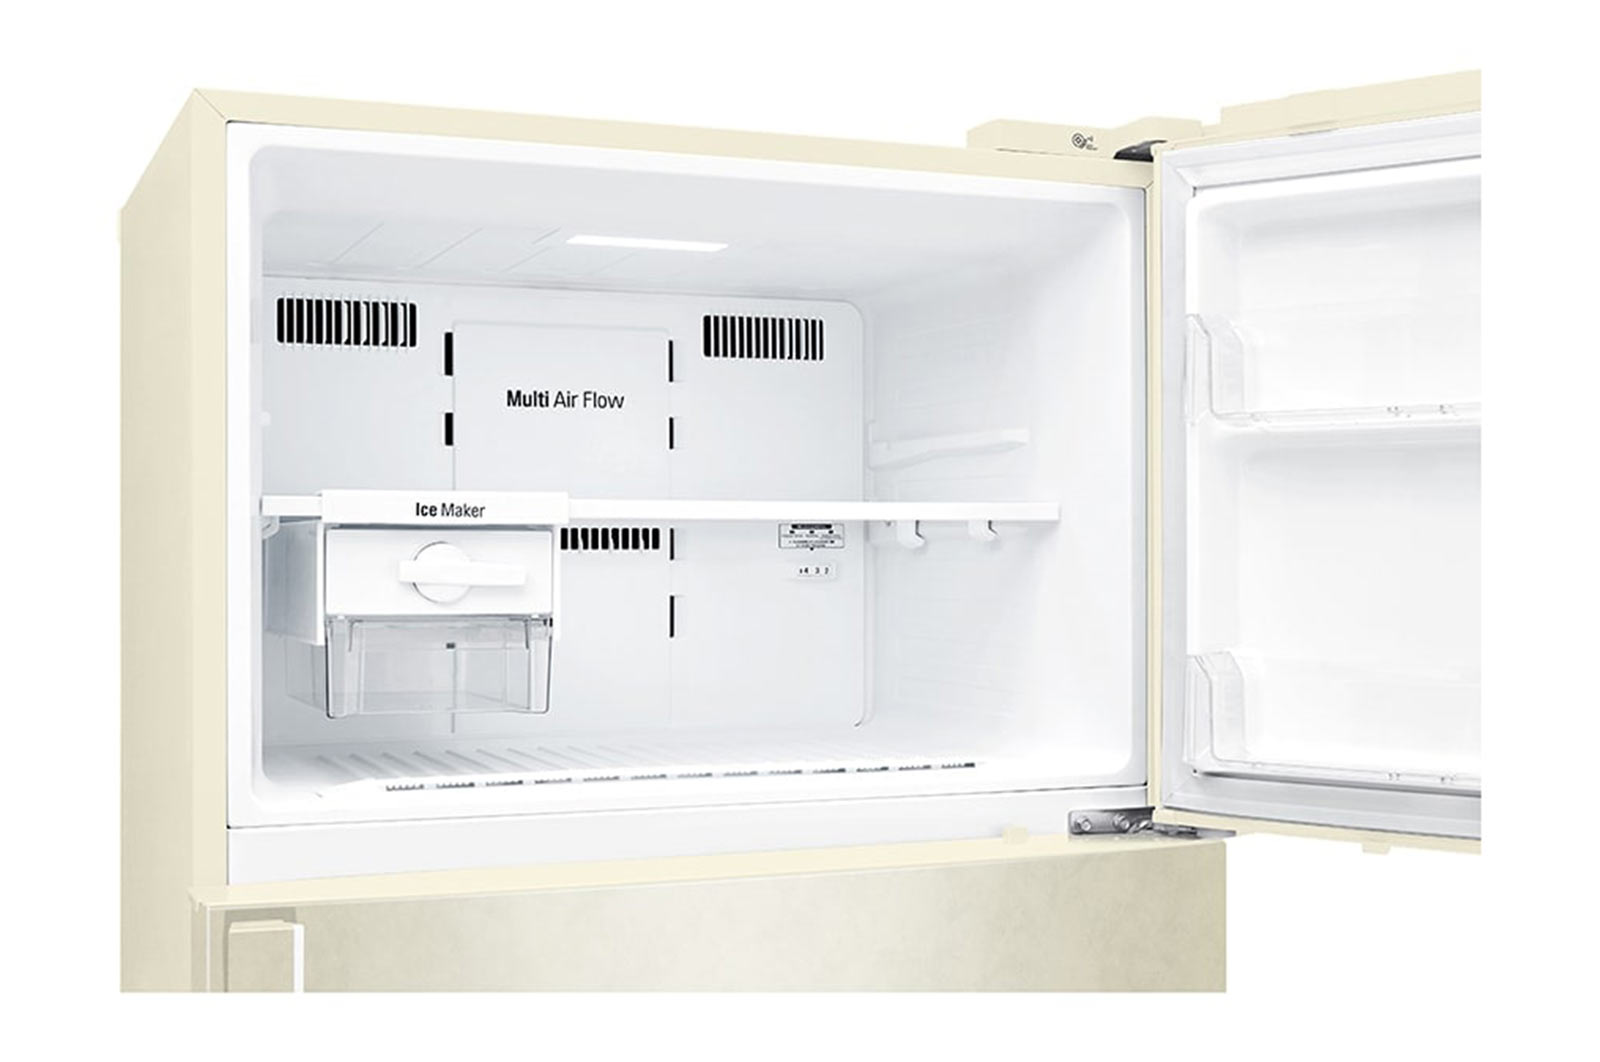 Холодильник LG GR-H802HEHL